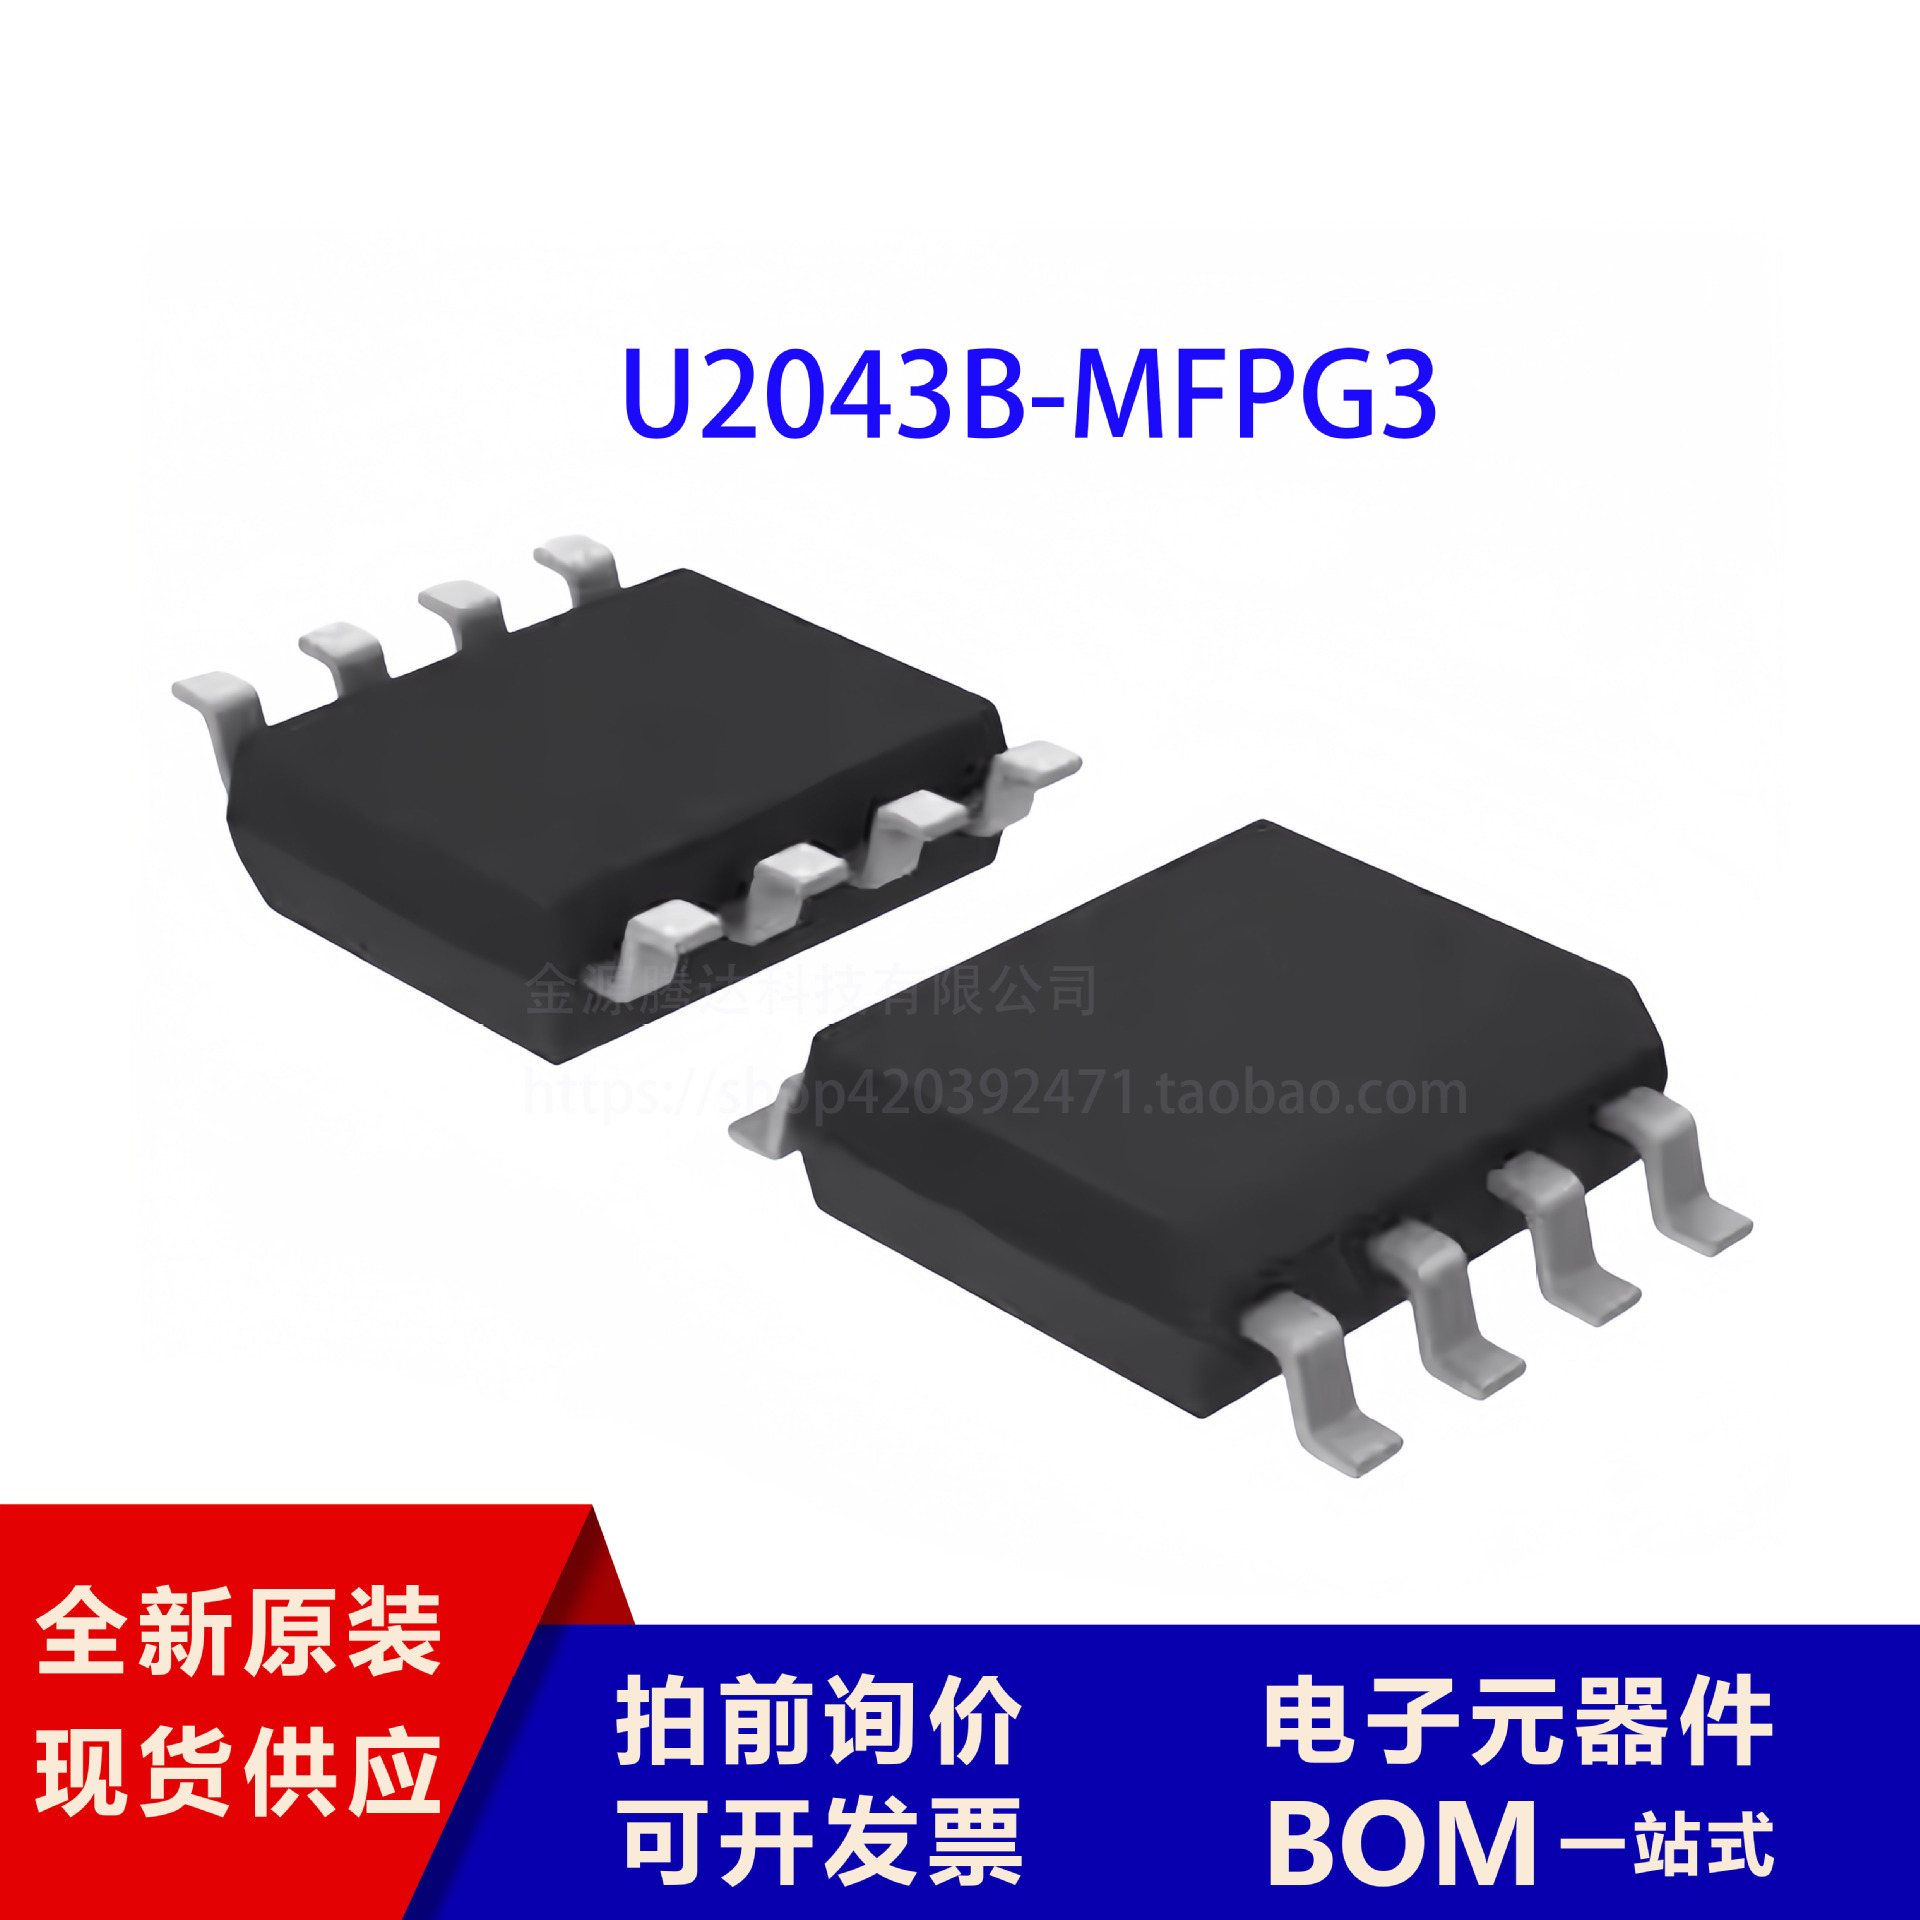 原装现货 U2043B-MFPG3Y 封装SOIC-8 主动器件 电子元器件 现货